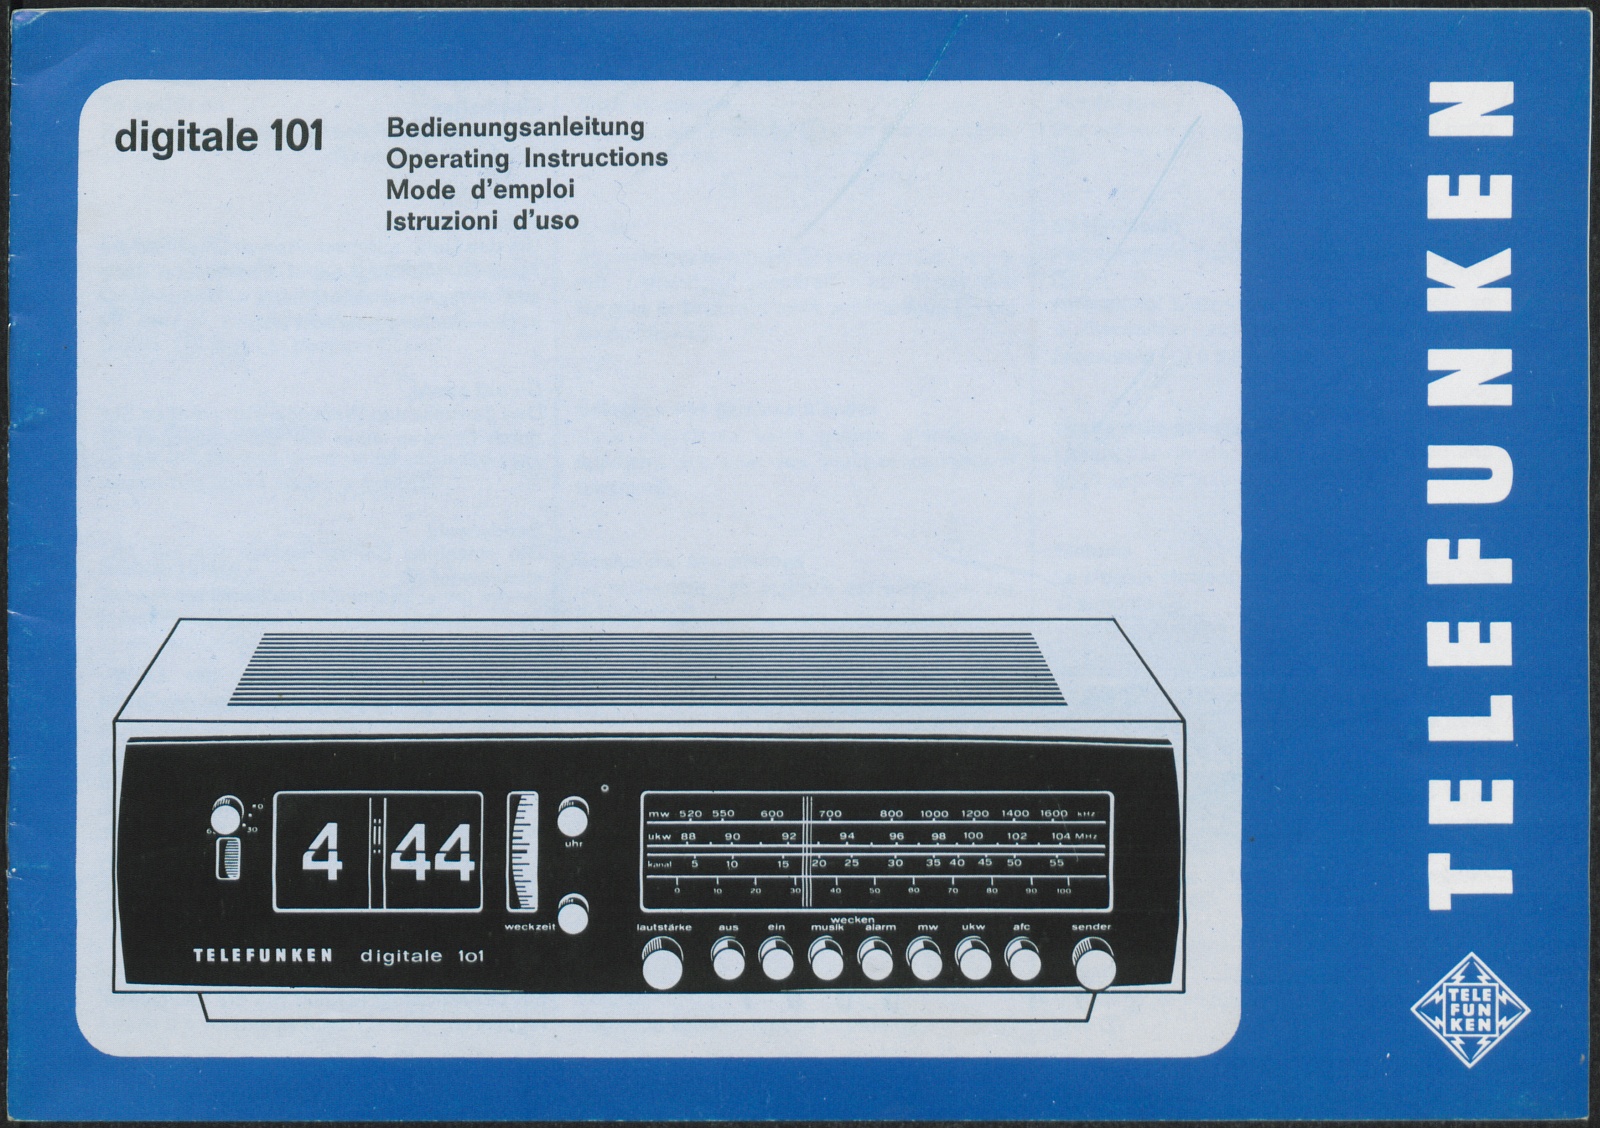 Bedienungsanleitung: Bedienungsanleitung Telefunken digitale 101 (Stiftung Deutsches Technikmuseum Berlin CC0)